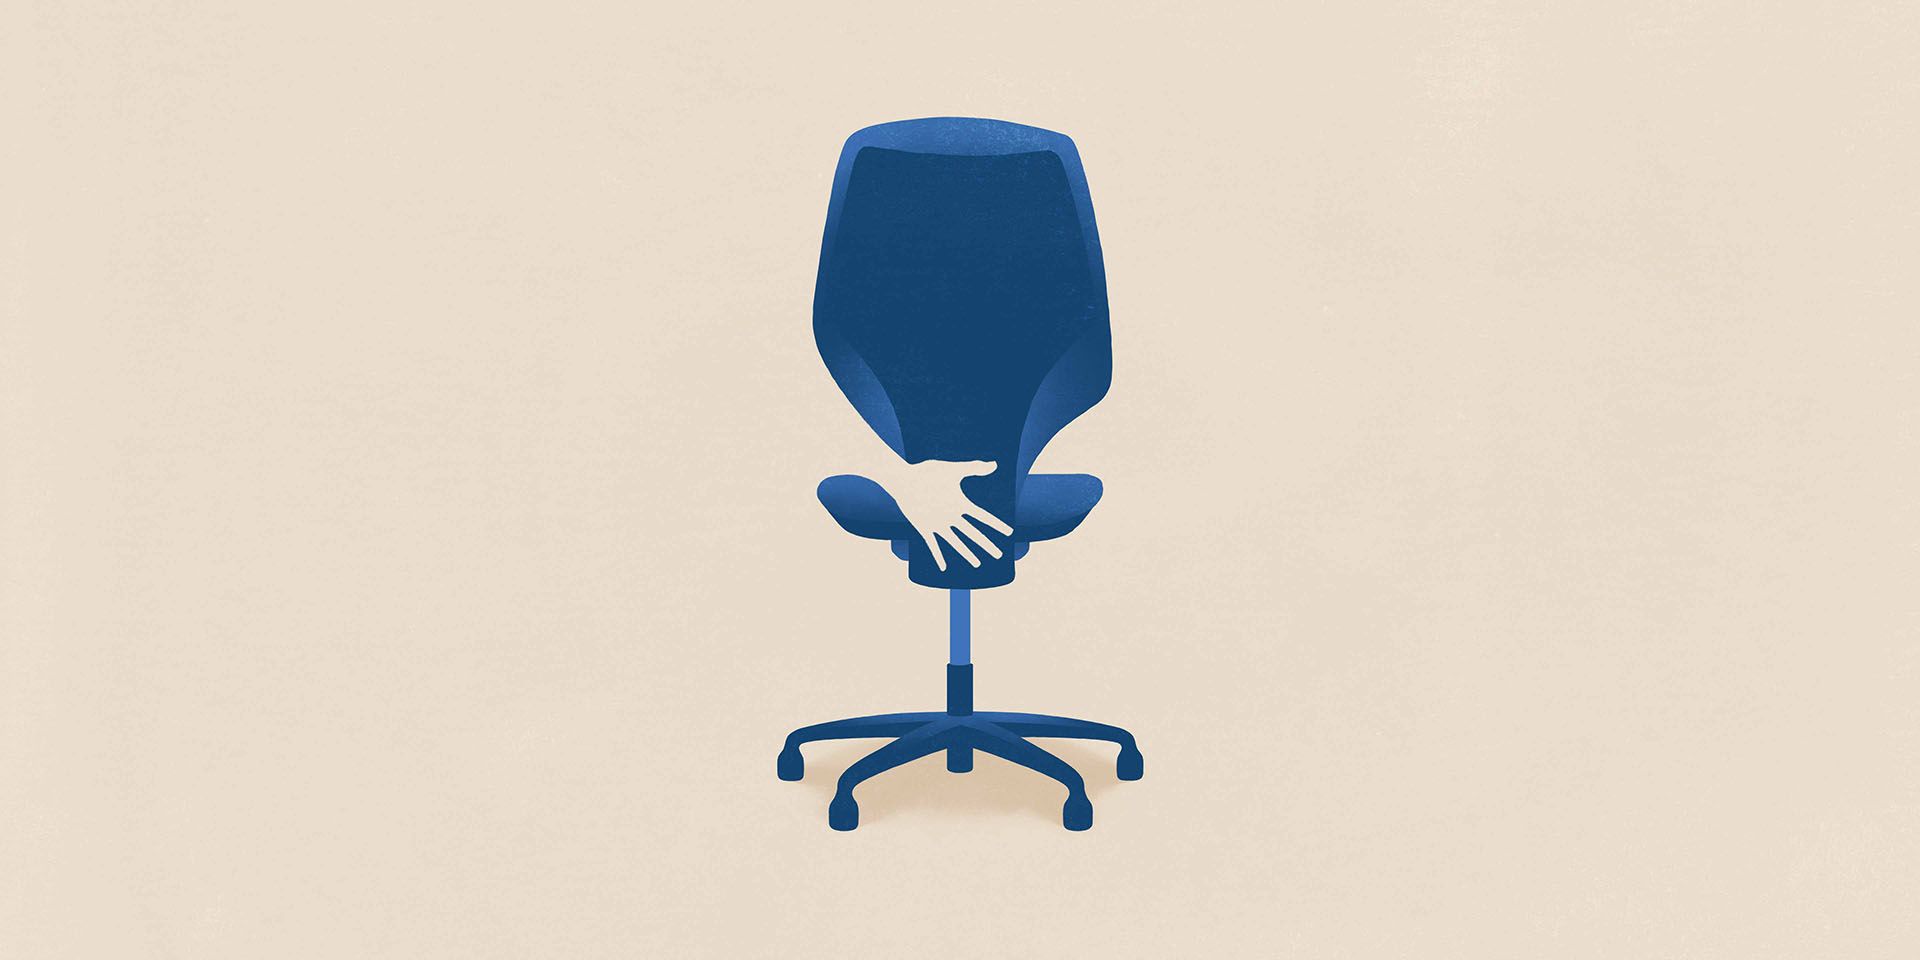 Sexuelle Belästigung am Arbeitsplatz wird durch eine Hand symbolisiert, die einen Bürostuhl anfasst.